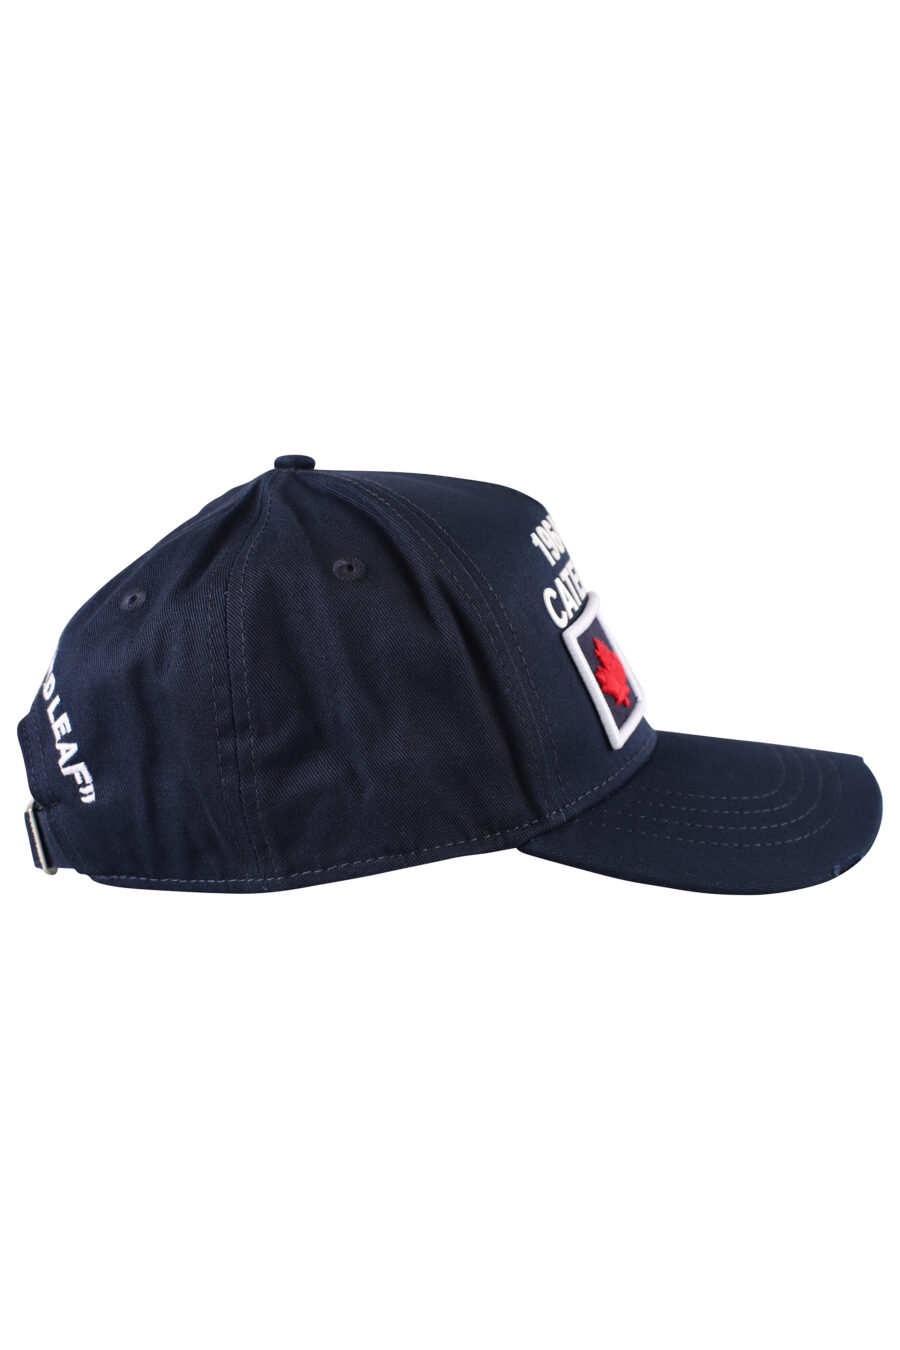 Gorra azul con logo en cuadro rojo - IMG 1250